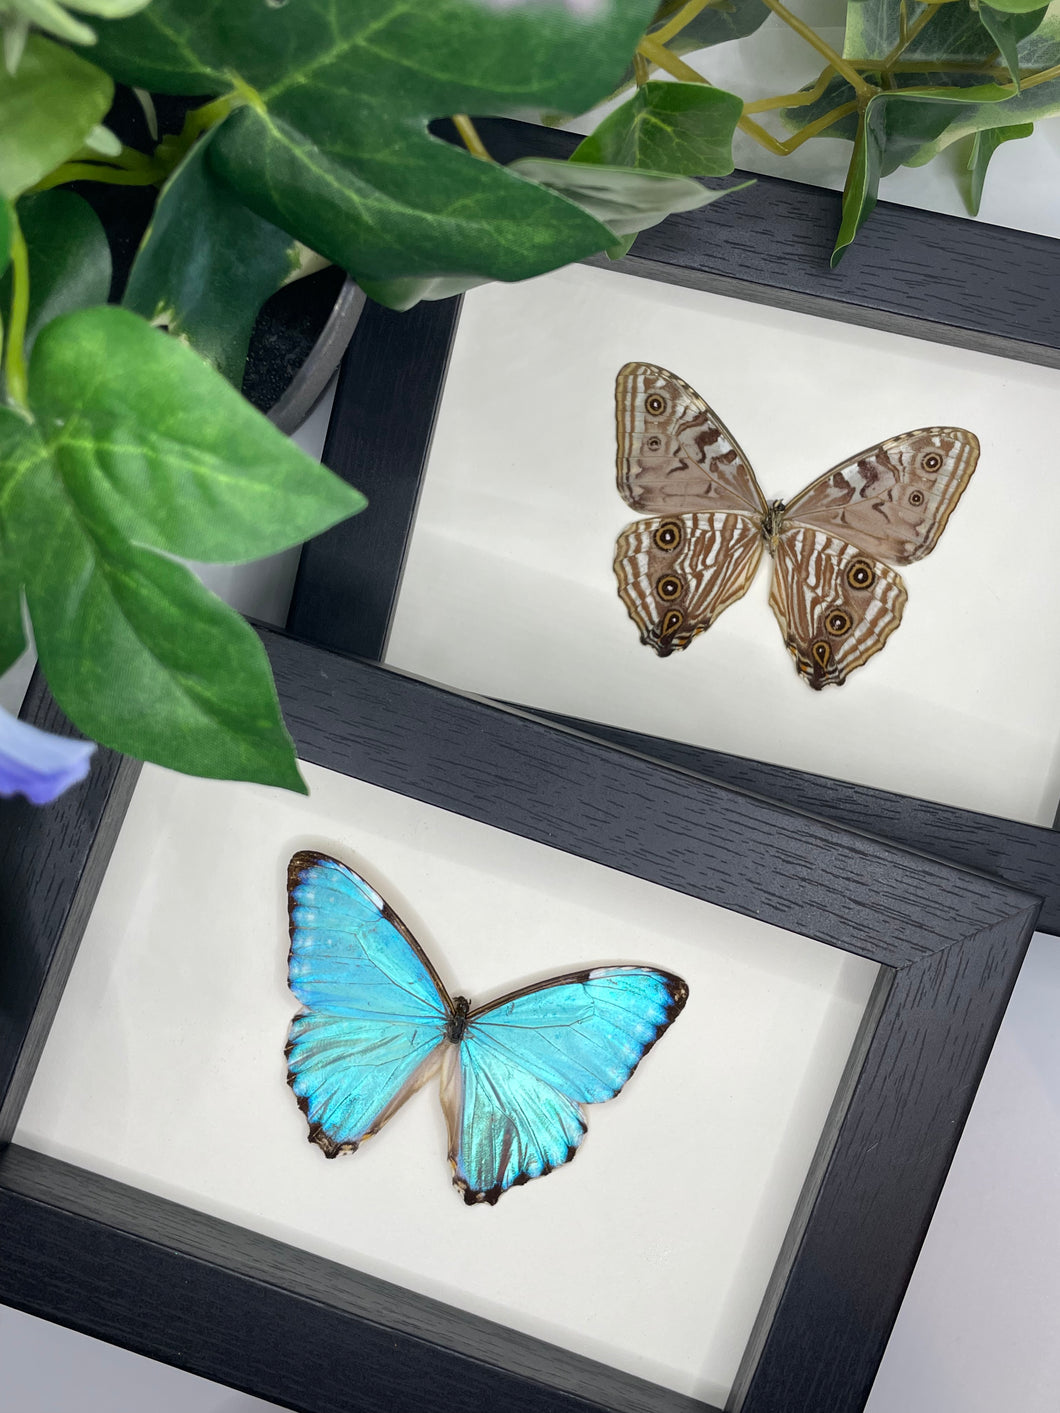 Morpho Portis Butterfly in a frame